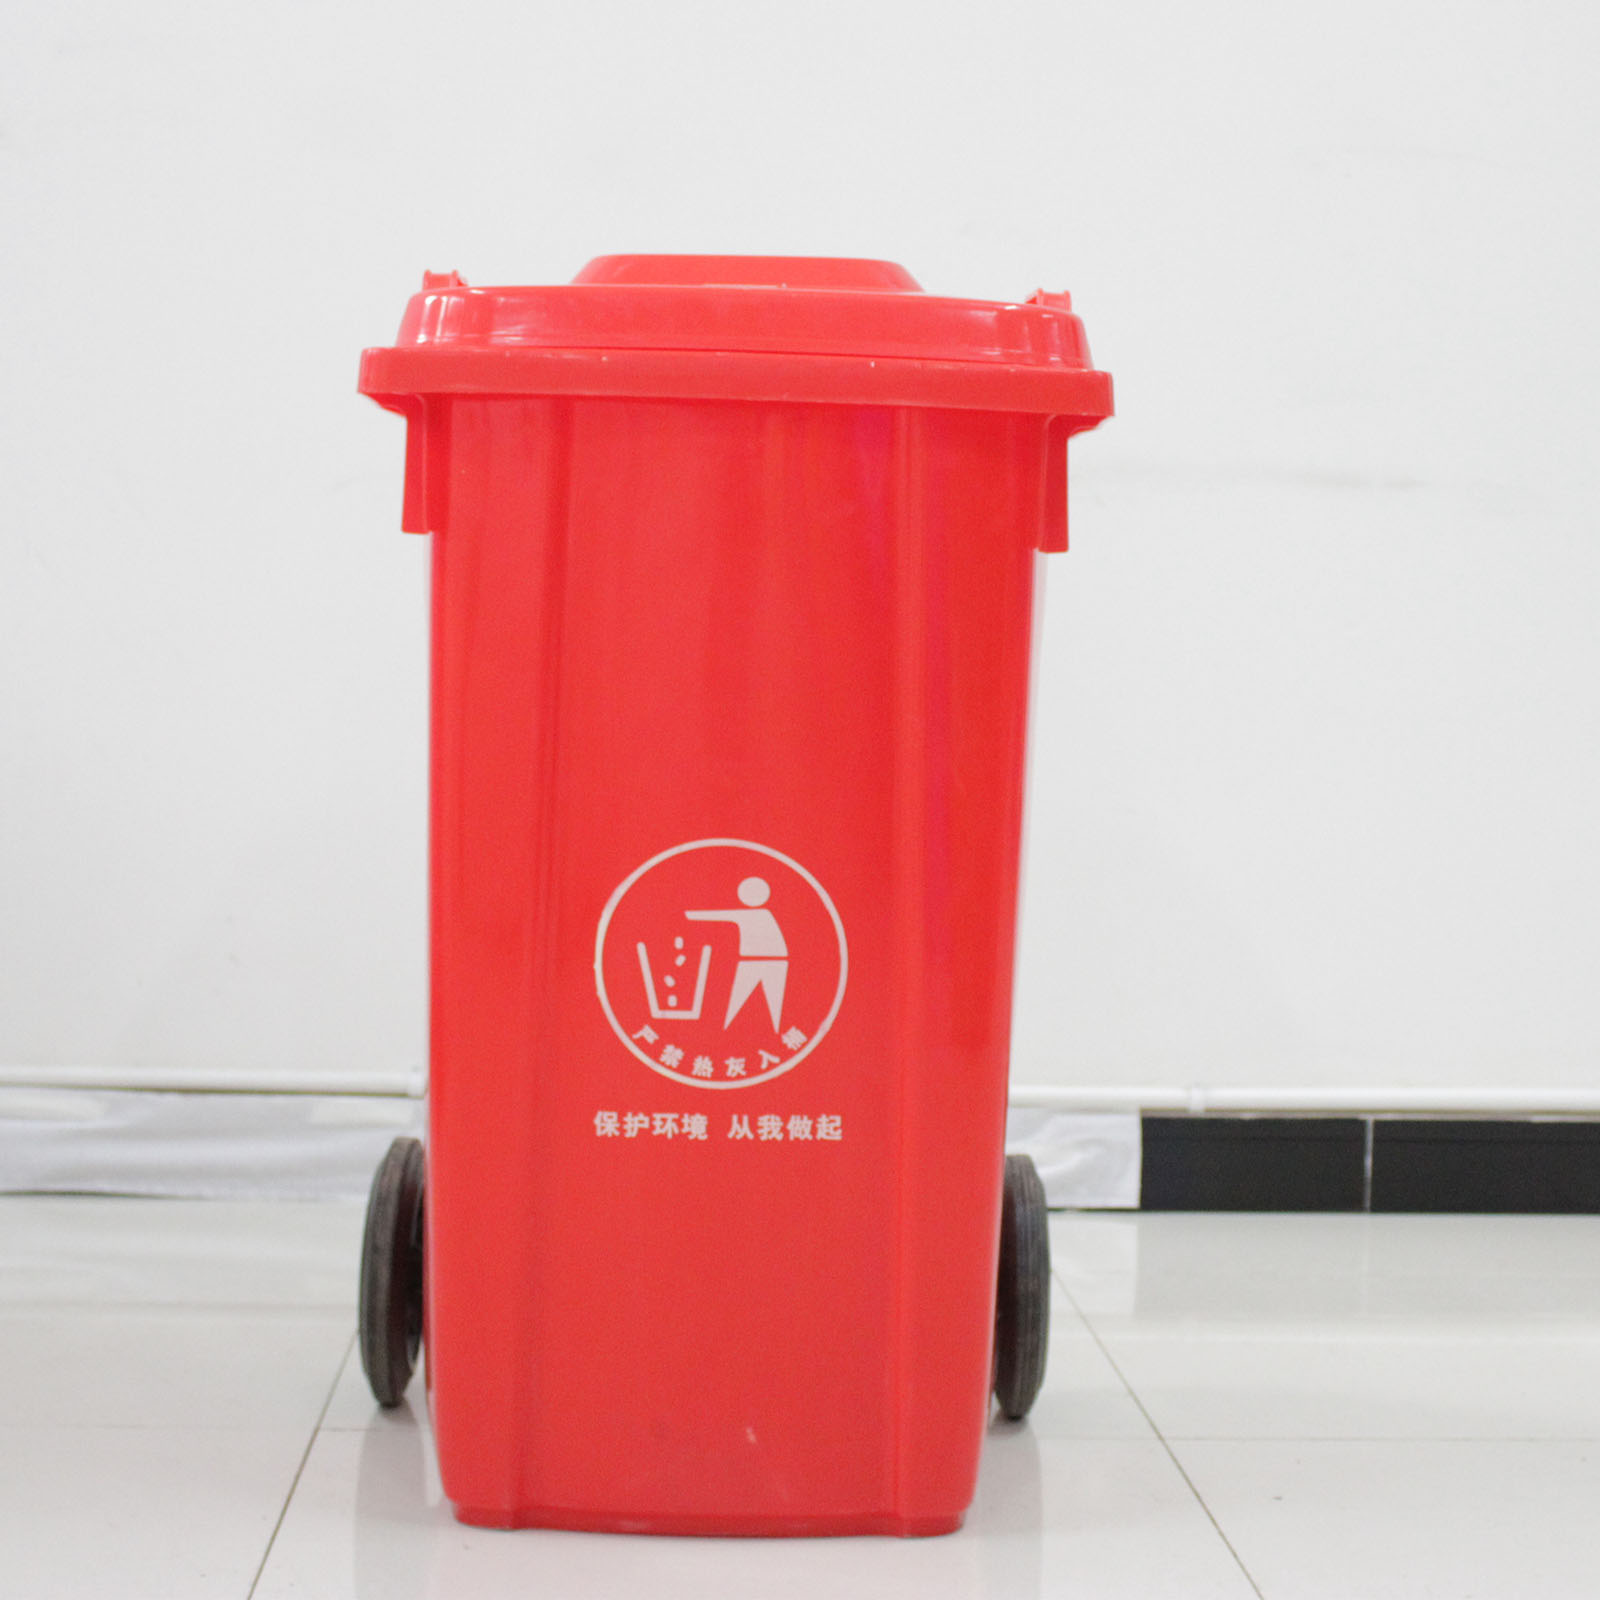 重庆100L环卫垃圾桶 环保挂车塑料垃圾桶厂家直销 100L环卫塑料垃圾桶